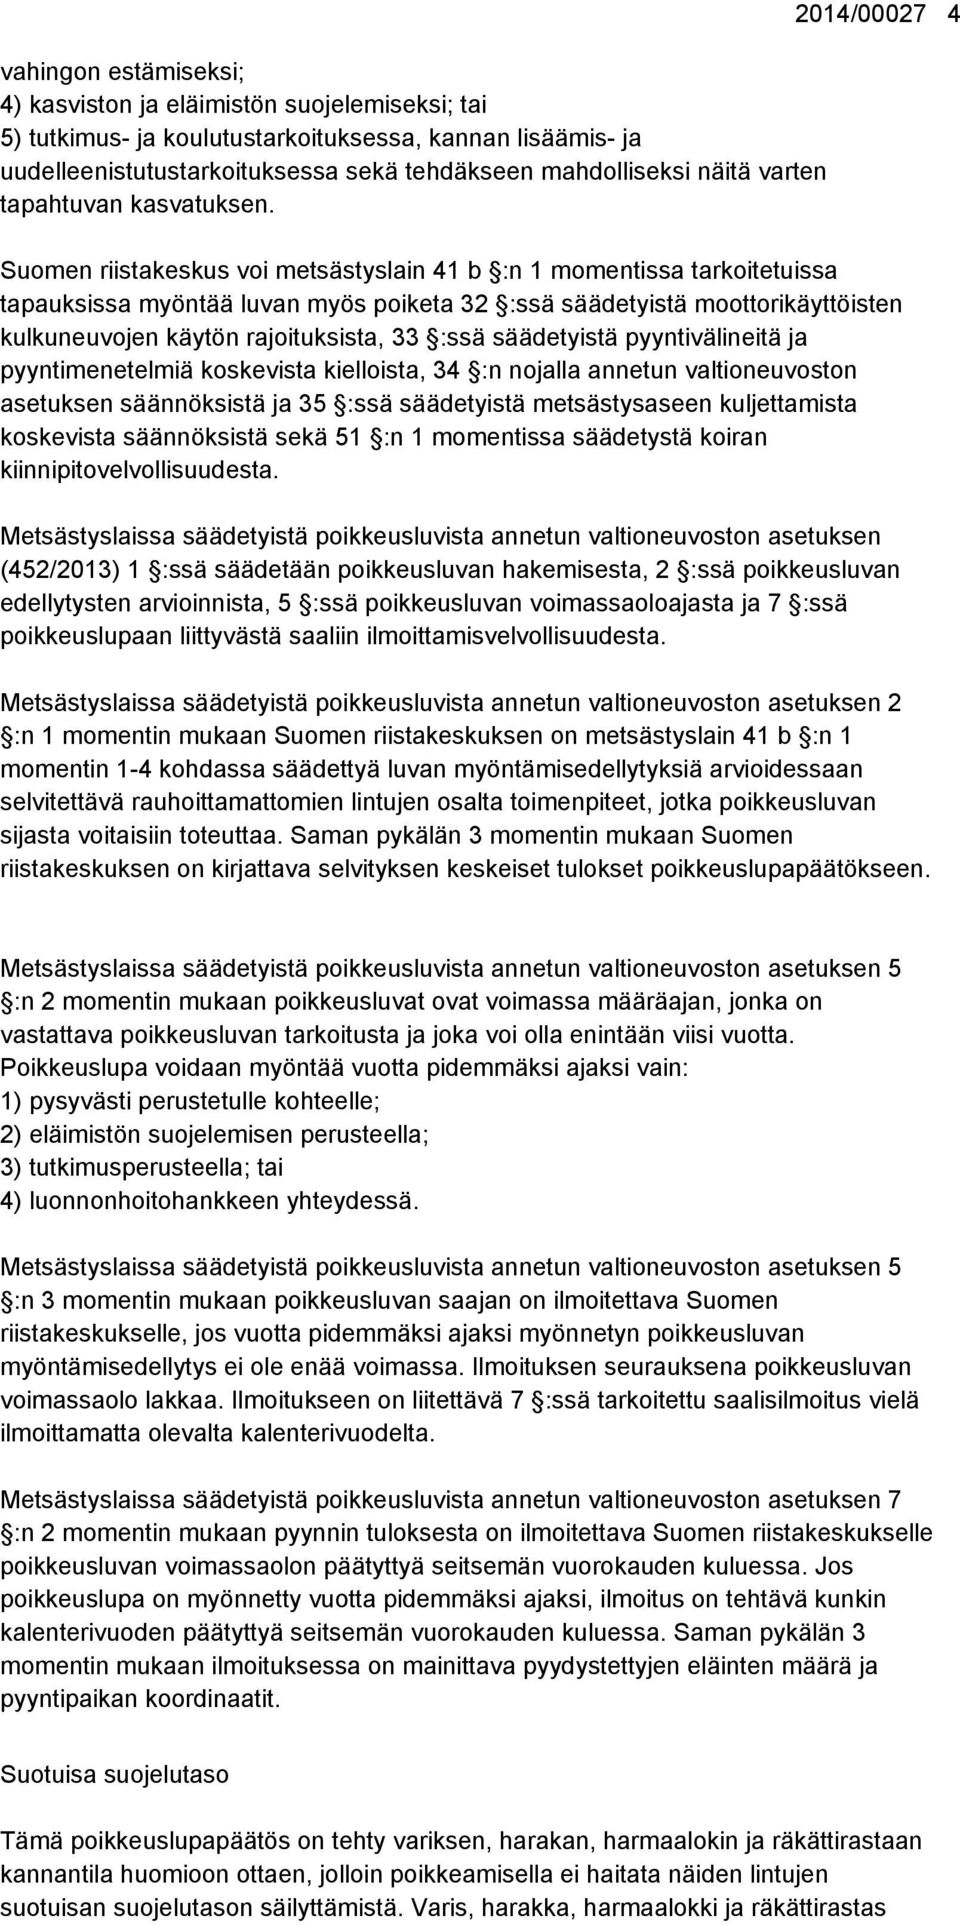 2014/00027 4 Suomen riistakeskus voi metsästyslain 41 b :n 1 momentissa tarkoitetuissa tapauksissa myöntää luvan myös poiketa 32 :ssä säädetyistä moottorikäyttöisten kulkuneuvojen käytön